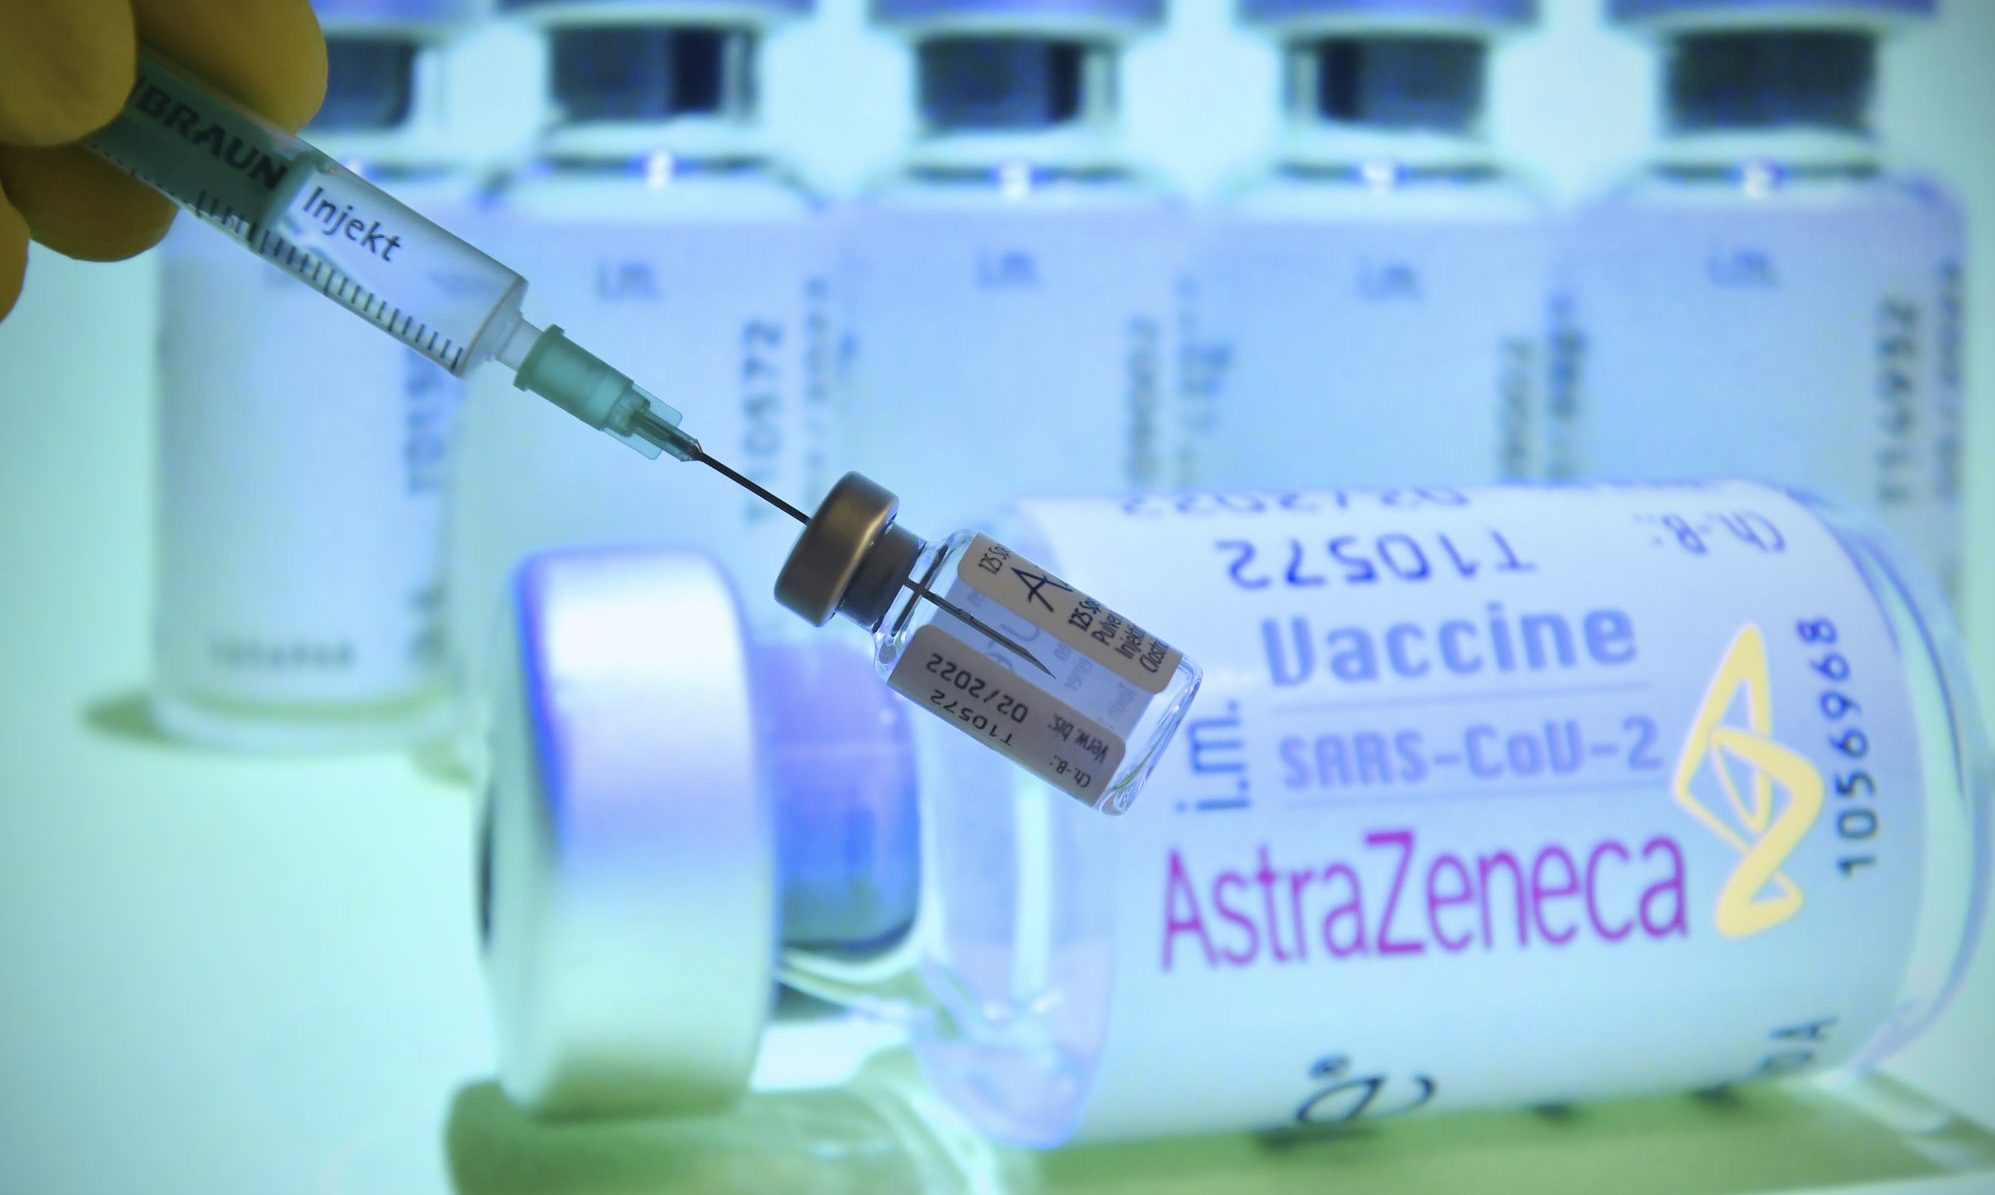 Ευρωπαϊκός Οργανισμός Φαρμάκων: "Καμία ένδειξη" ότι το εμβόλιο της AstraZeneca προκάλεσε έναν θάνατο στην Αυστρία